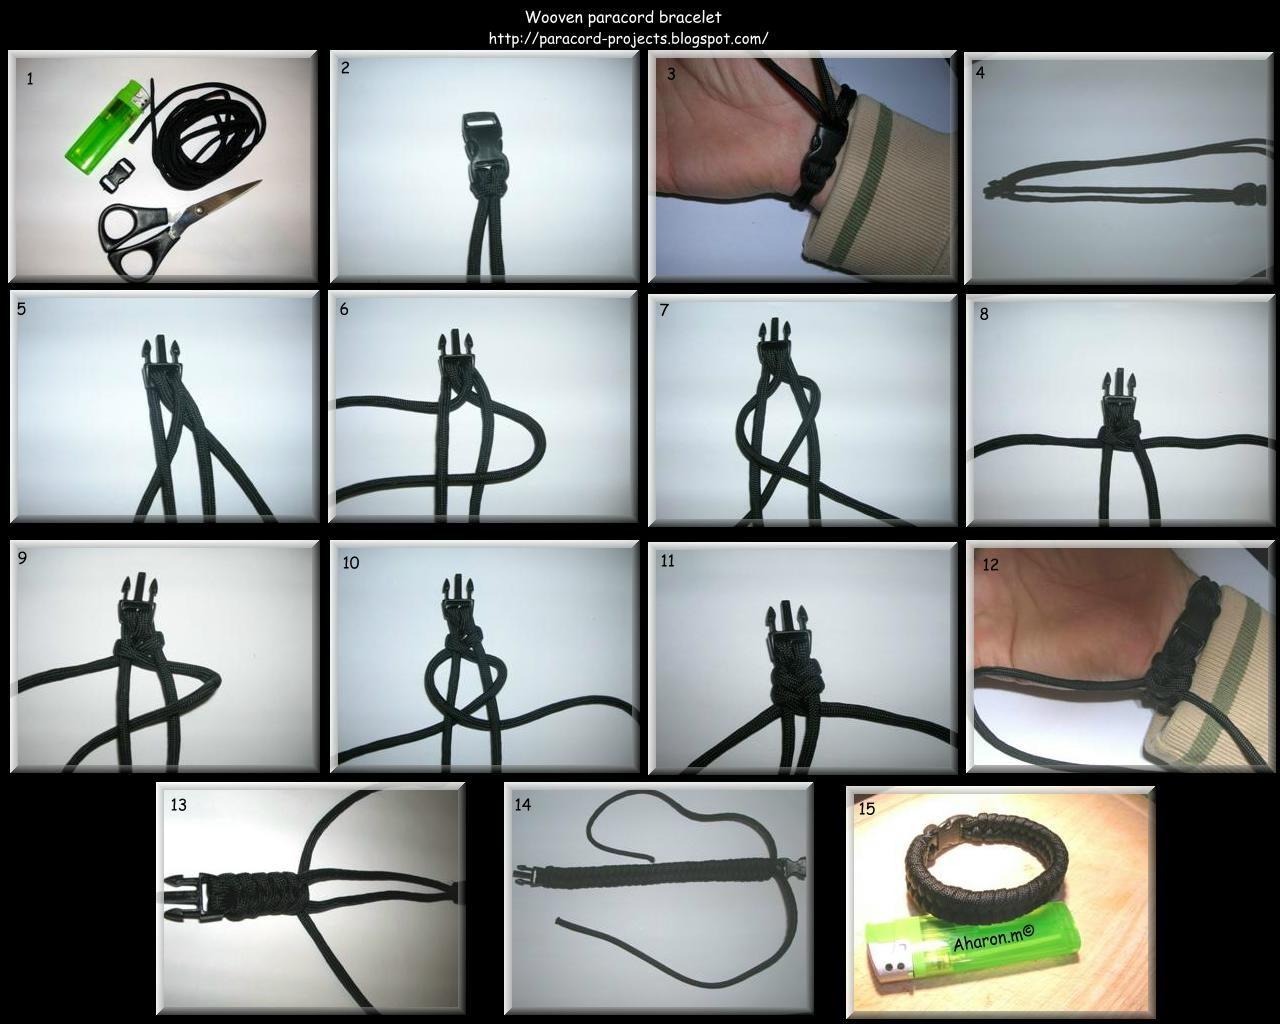 How do you make parachute cord bracelets?